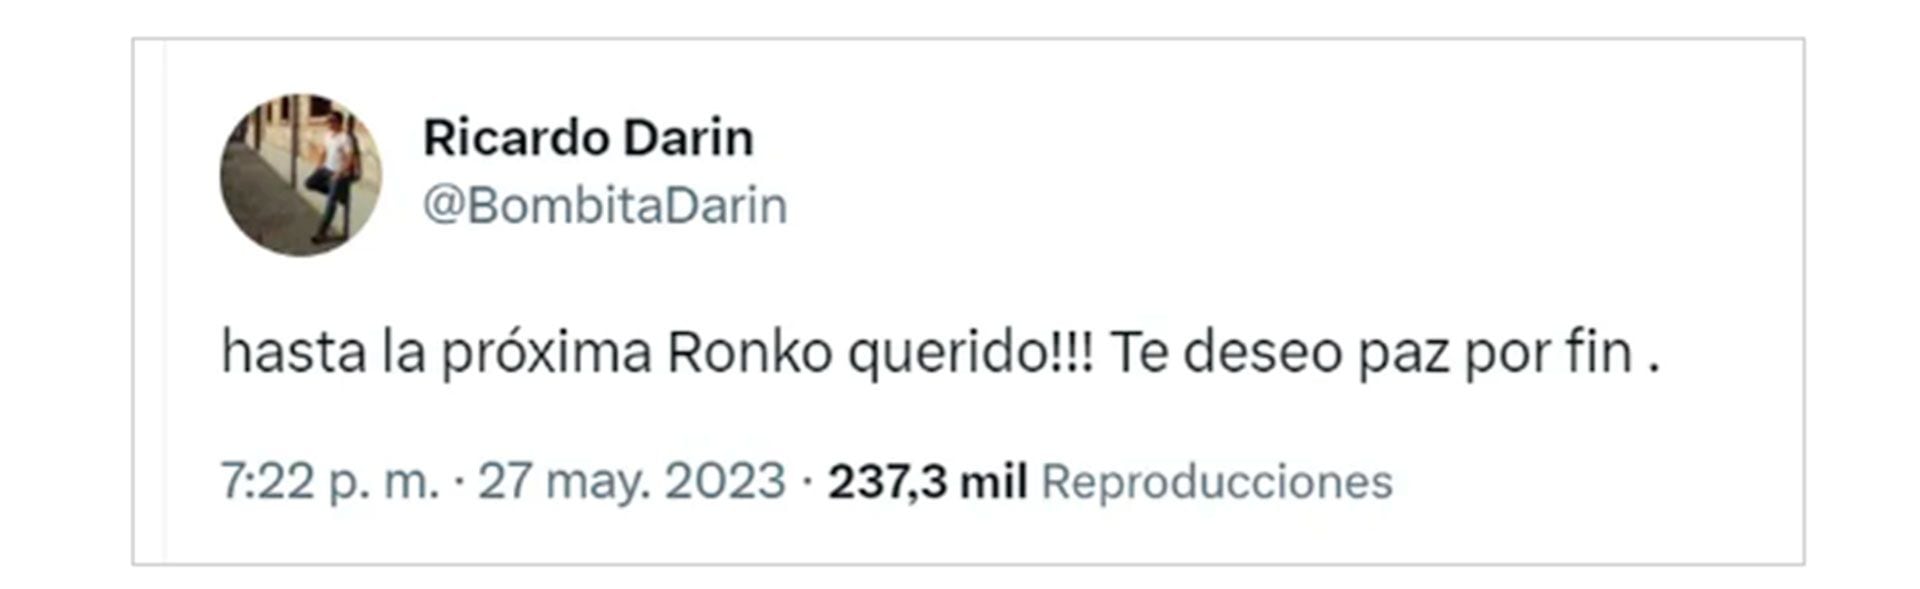 El mensaje de despedida de Ricardo Darín a su perro Ronko